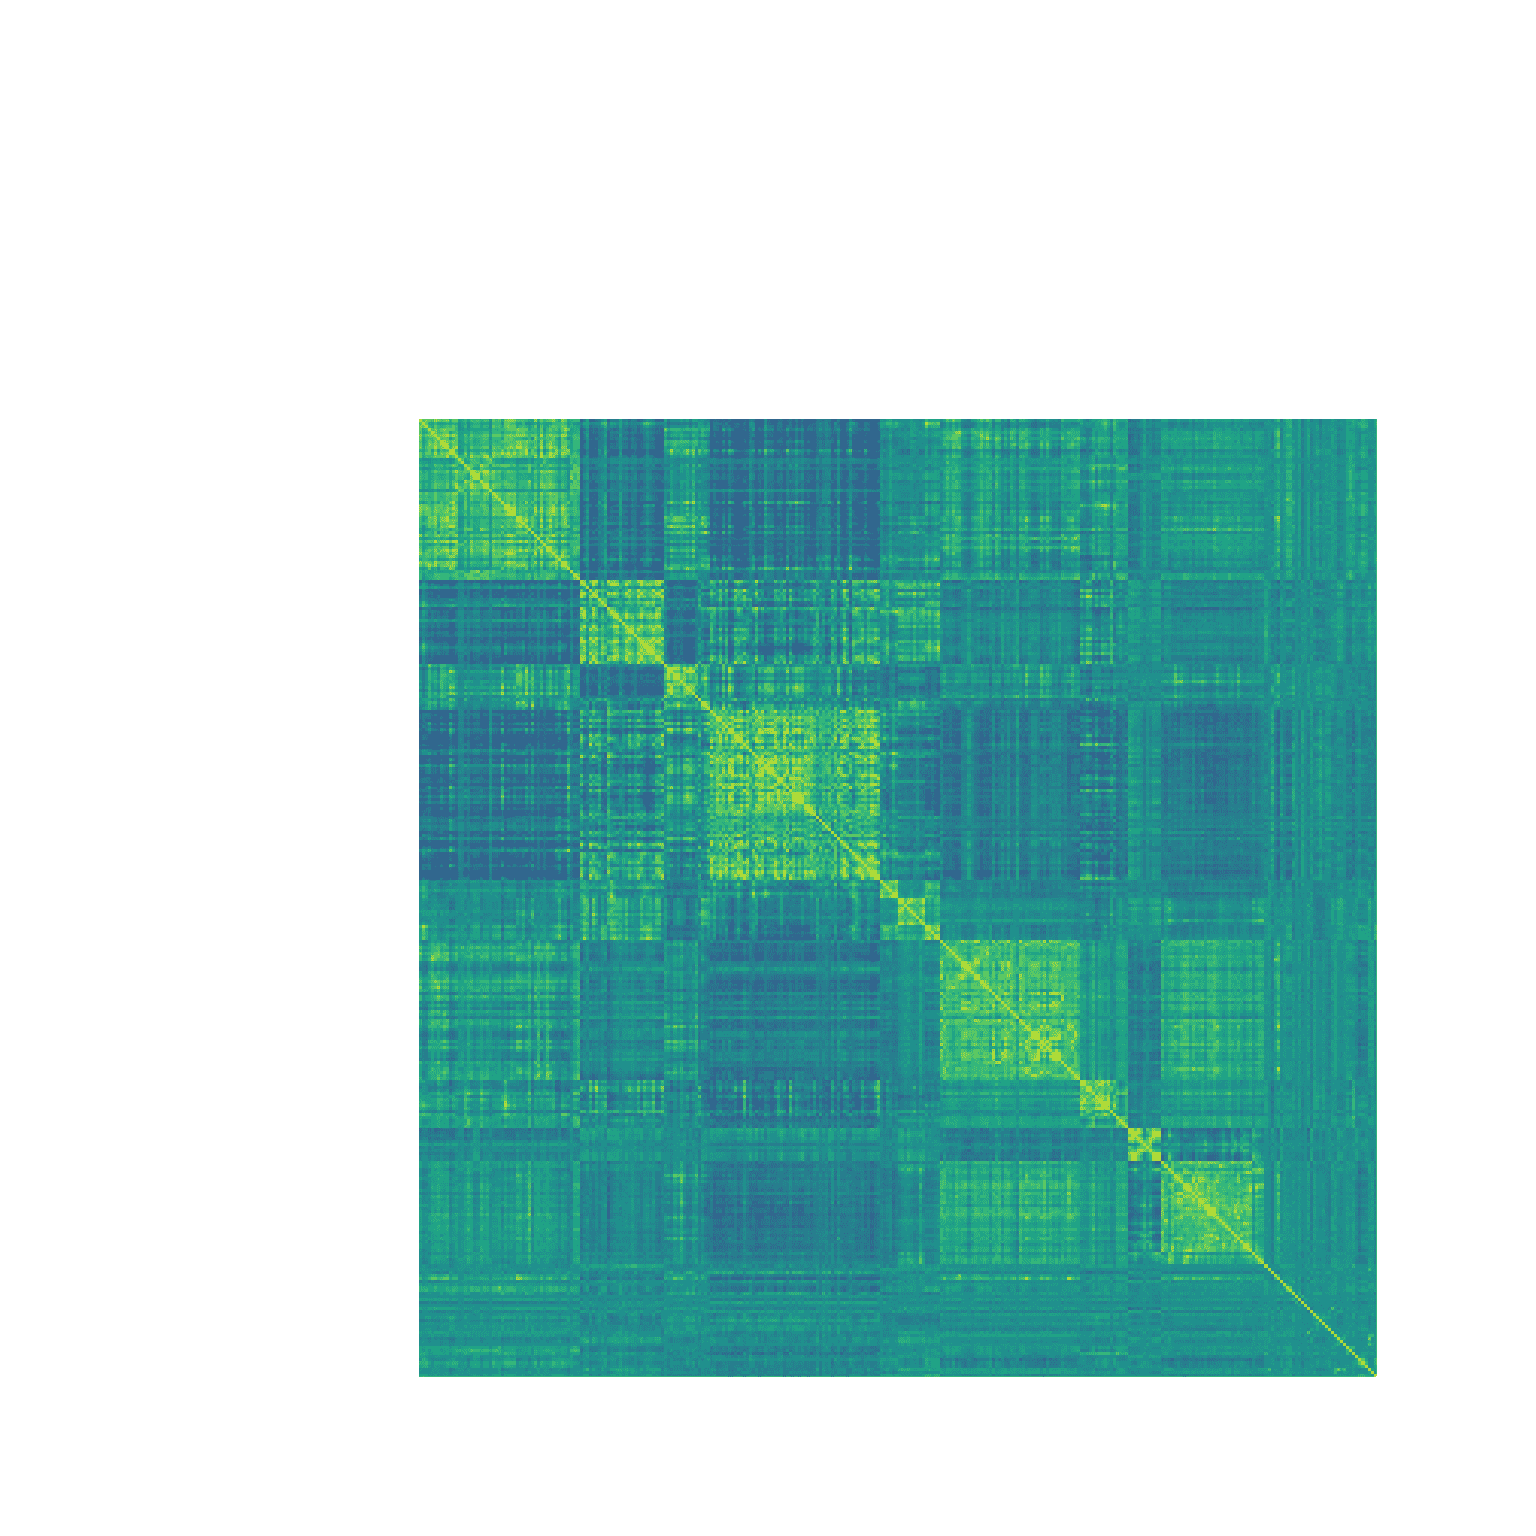 显示单个个体左半球 316 个脑区活动之间的相关系数的热图。黄色的单元格反映了强正相关，而蓝色的单元格反映了强负相关。矩阵对角线上的大块正相关对应于大脑中的主要连接网络